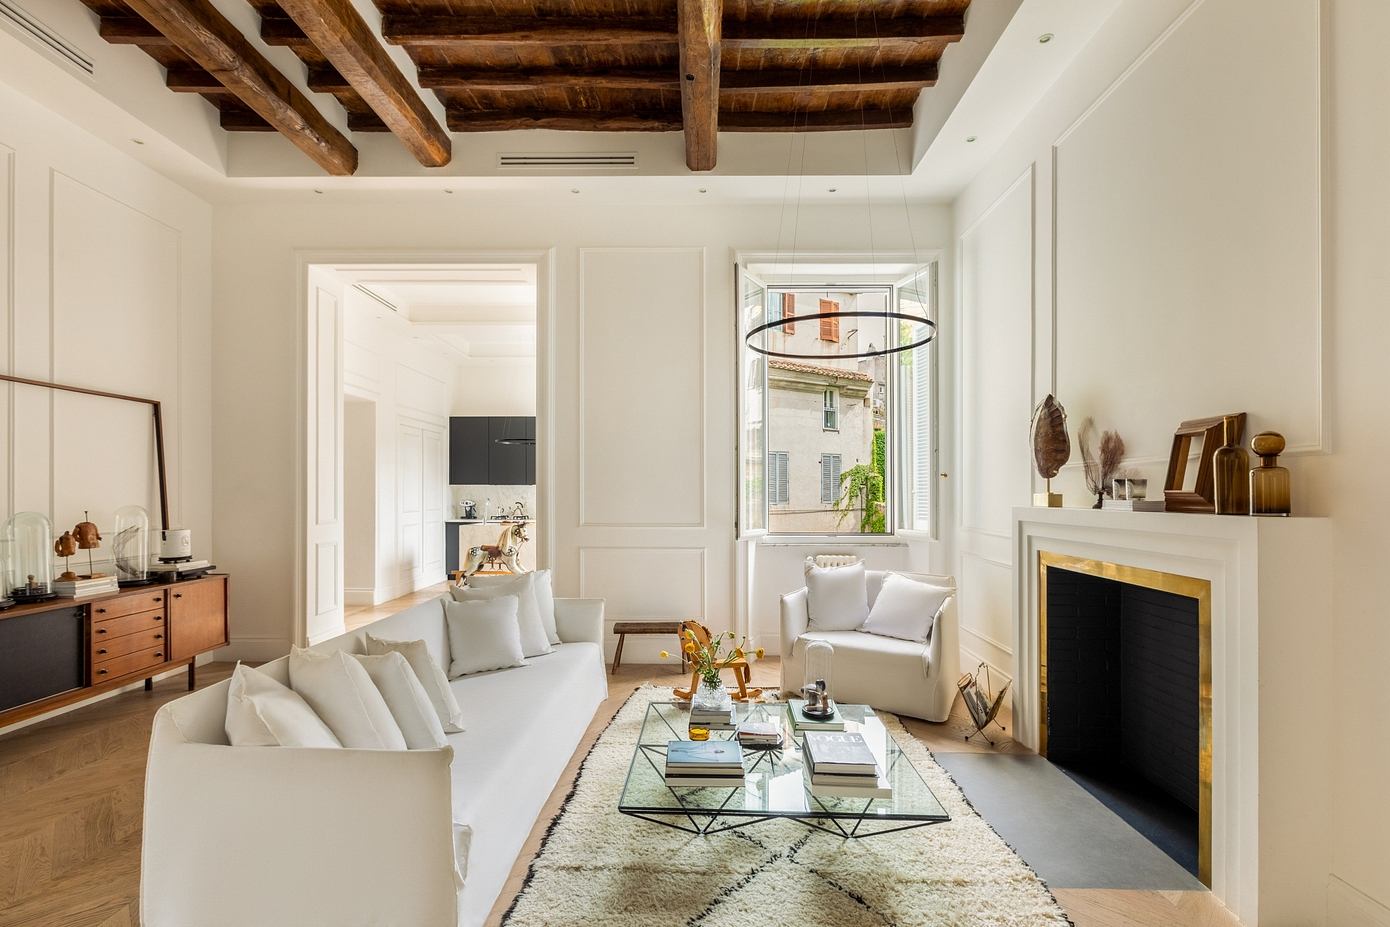 Via Della Vetrina: Giulia Venanzi’s Stunning Apartment in Rome